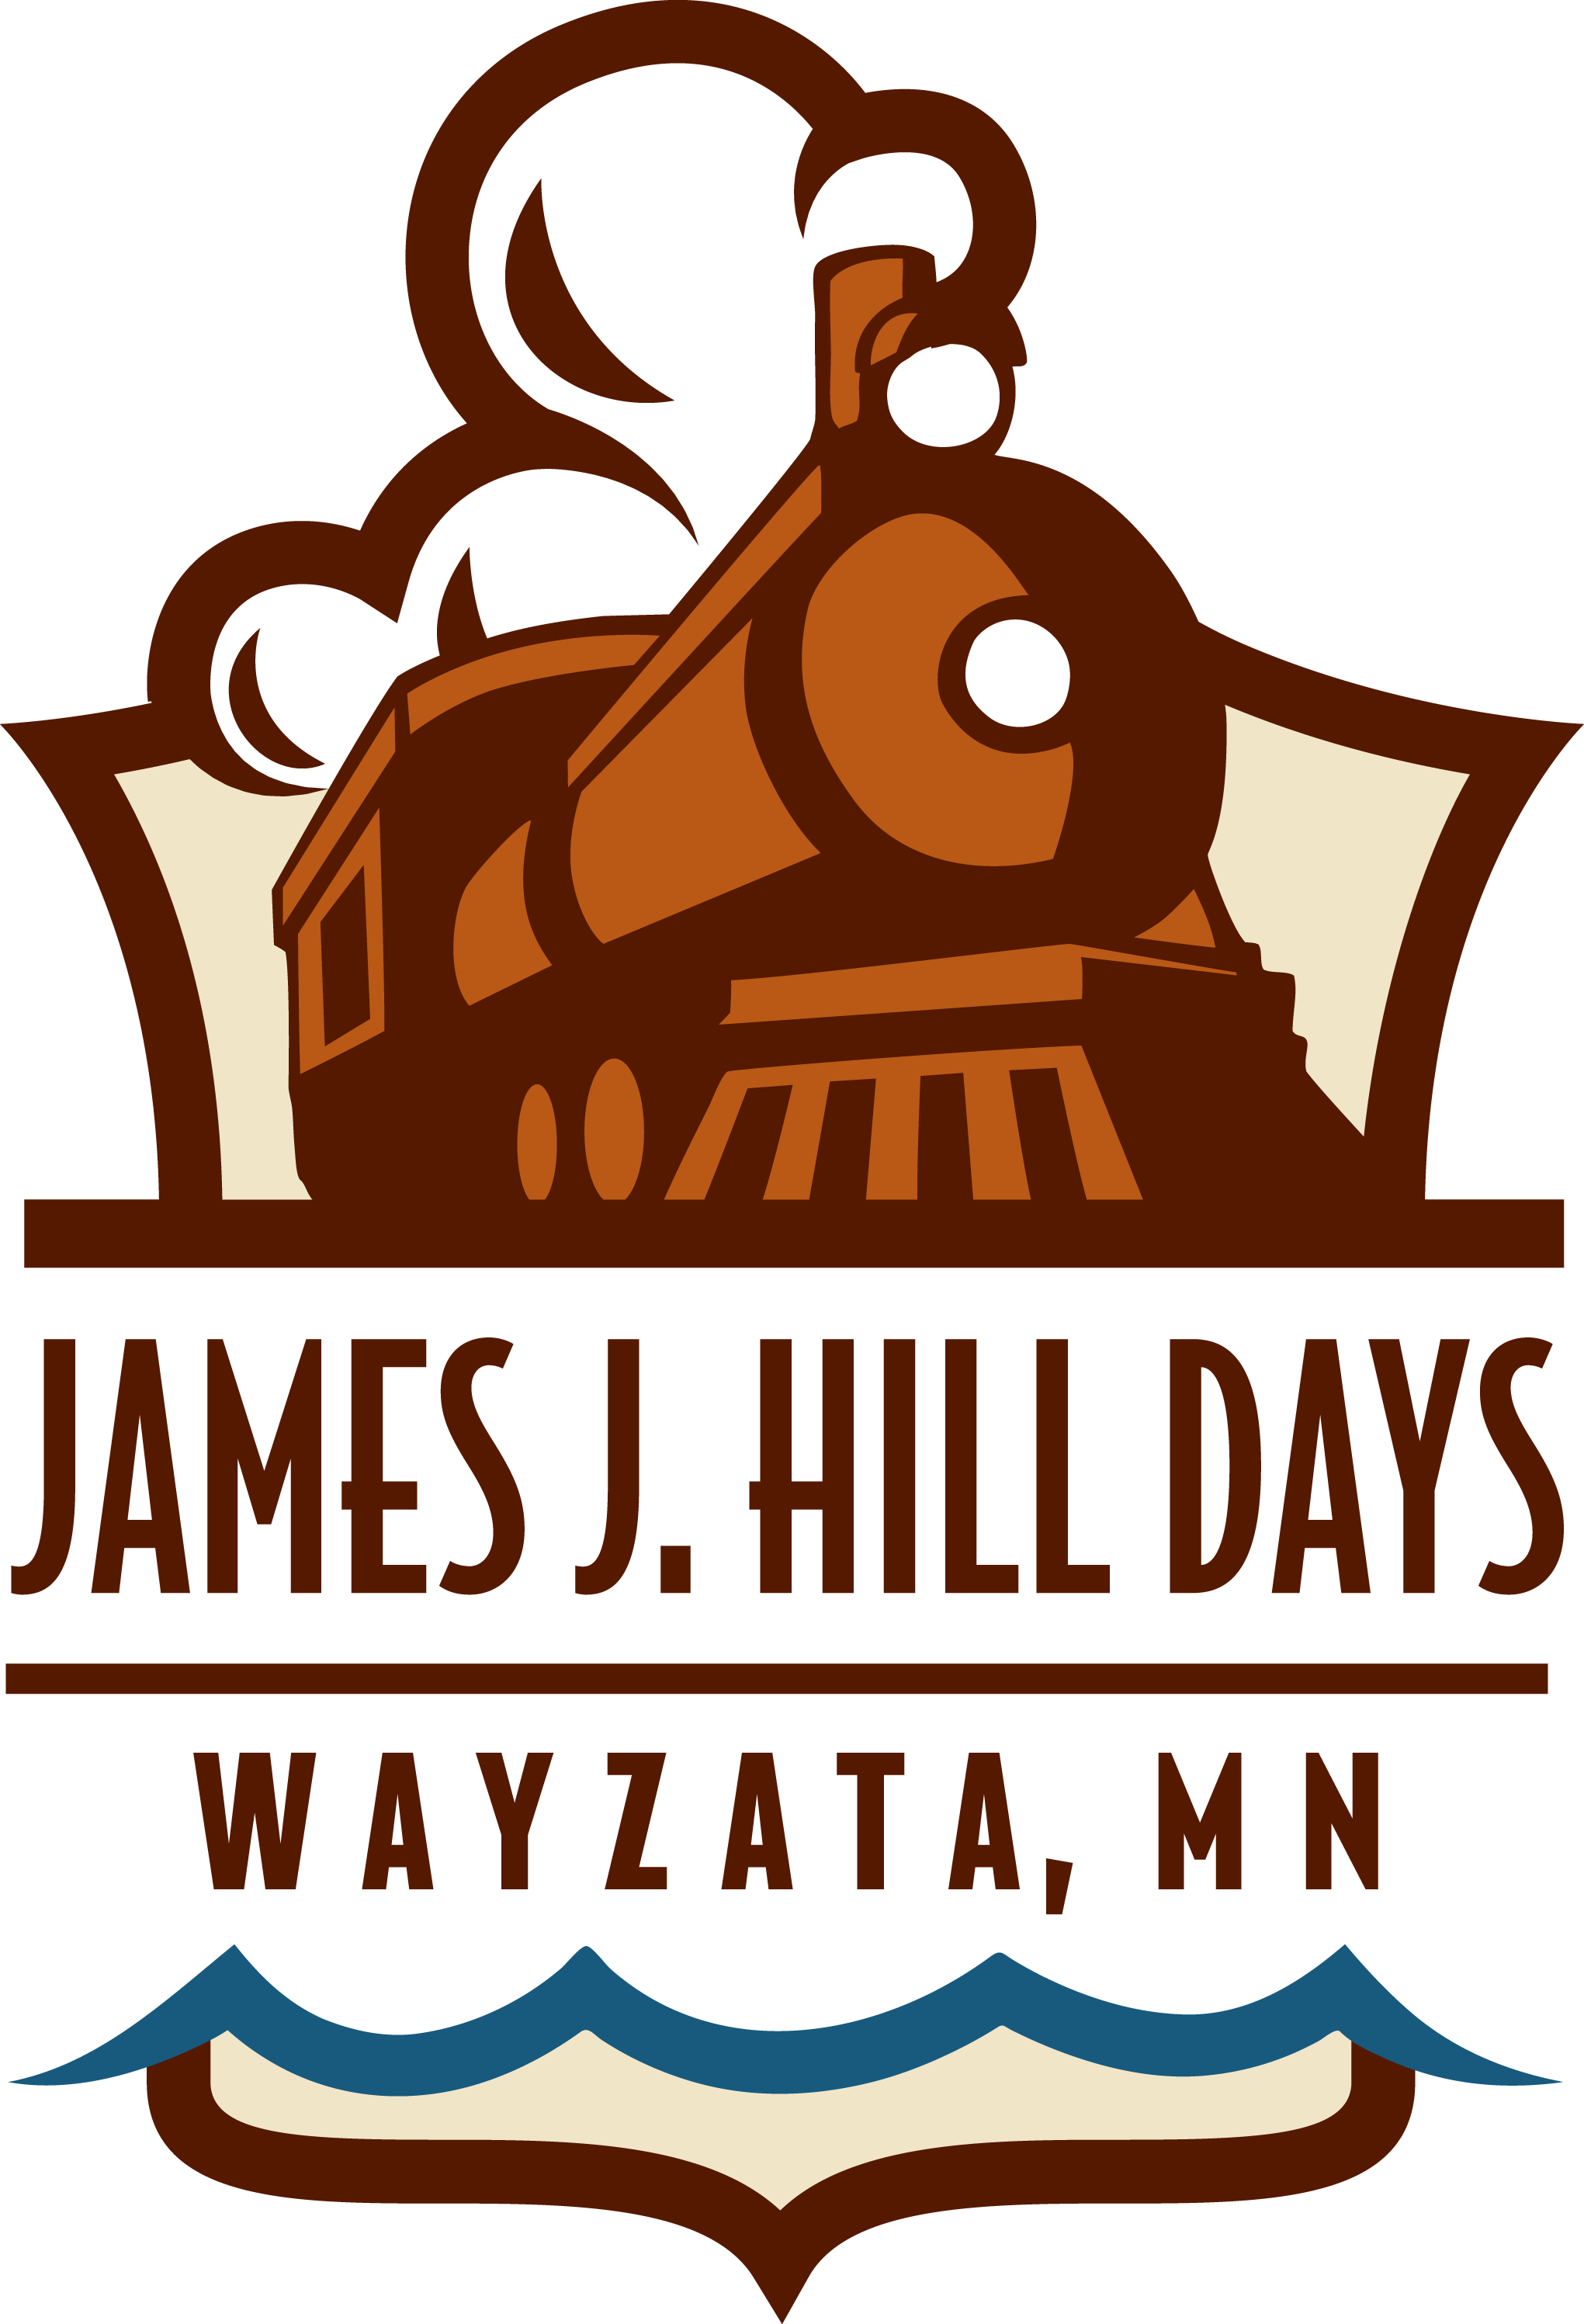 View Larger Image - James J Hill Days Wayzata 2018 (2041x2994)